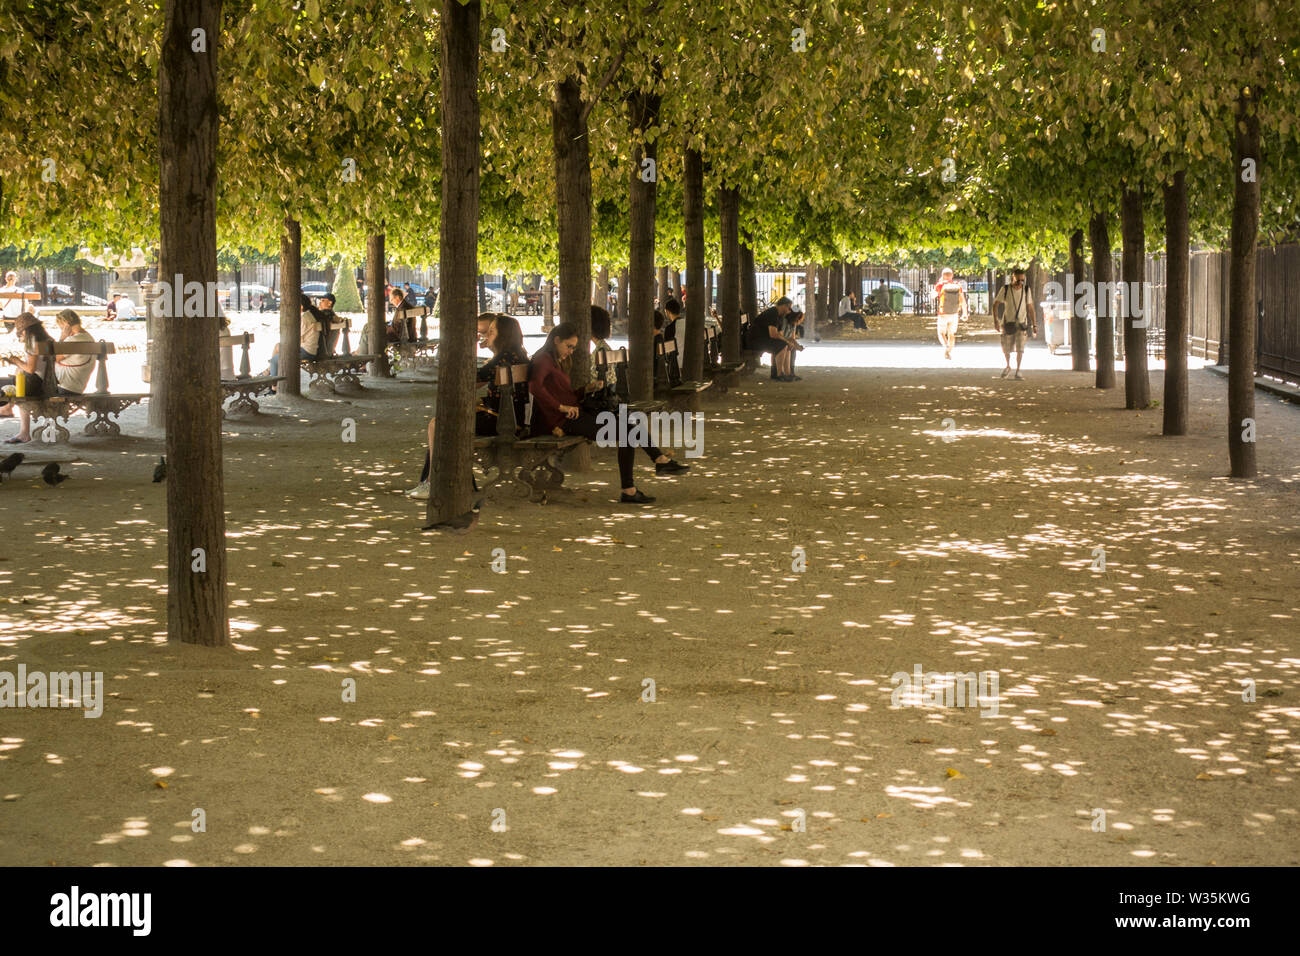 Los turistas en verano, la ola de calor en la Place des Vosges, París, Francia. Foto de stock